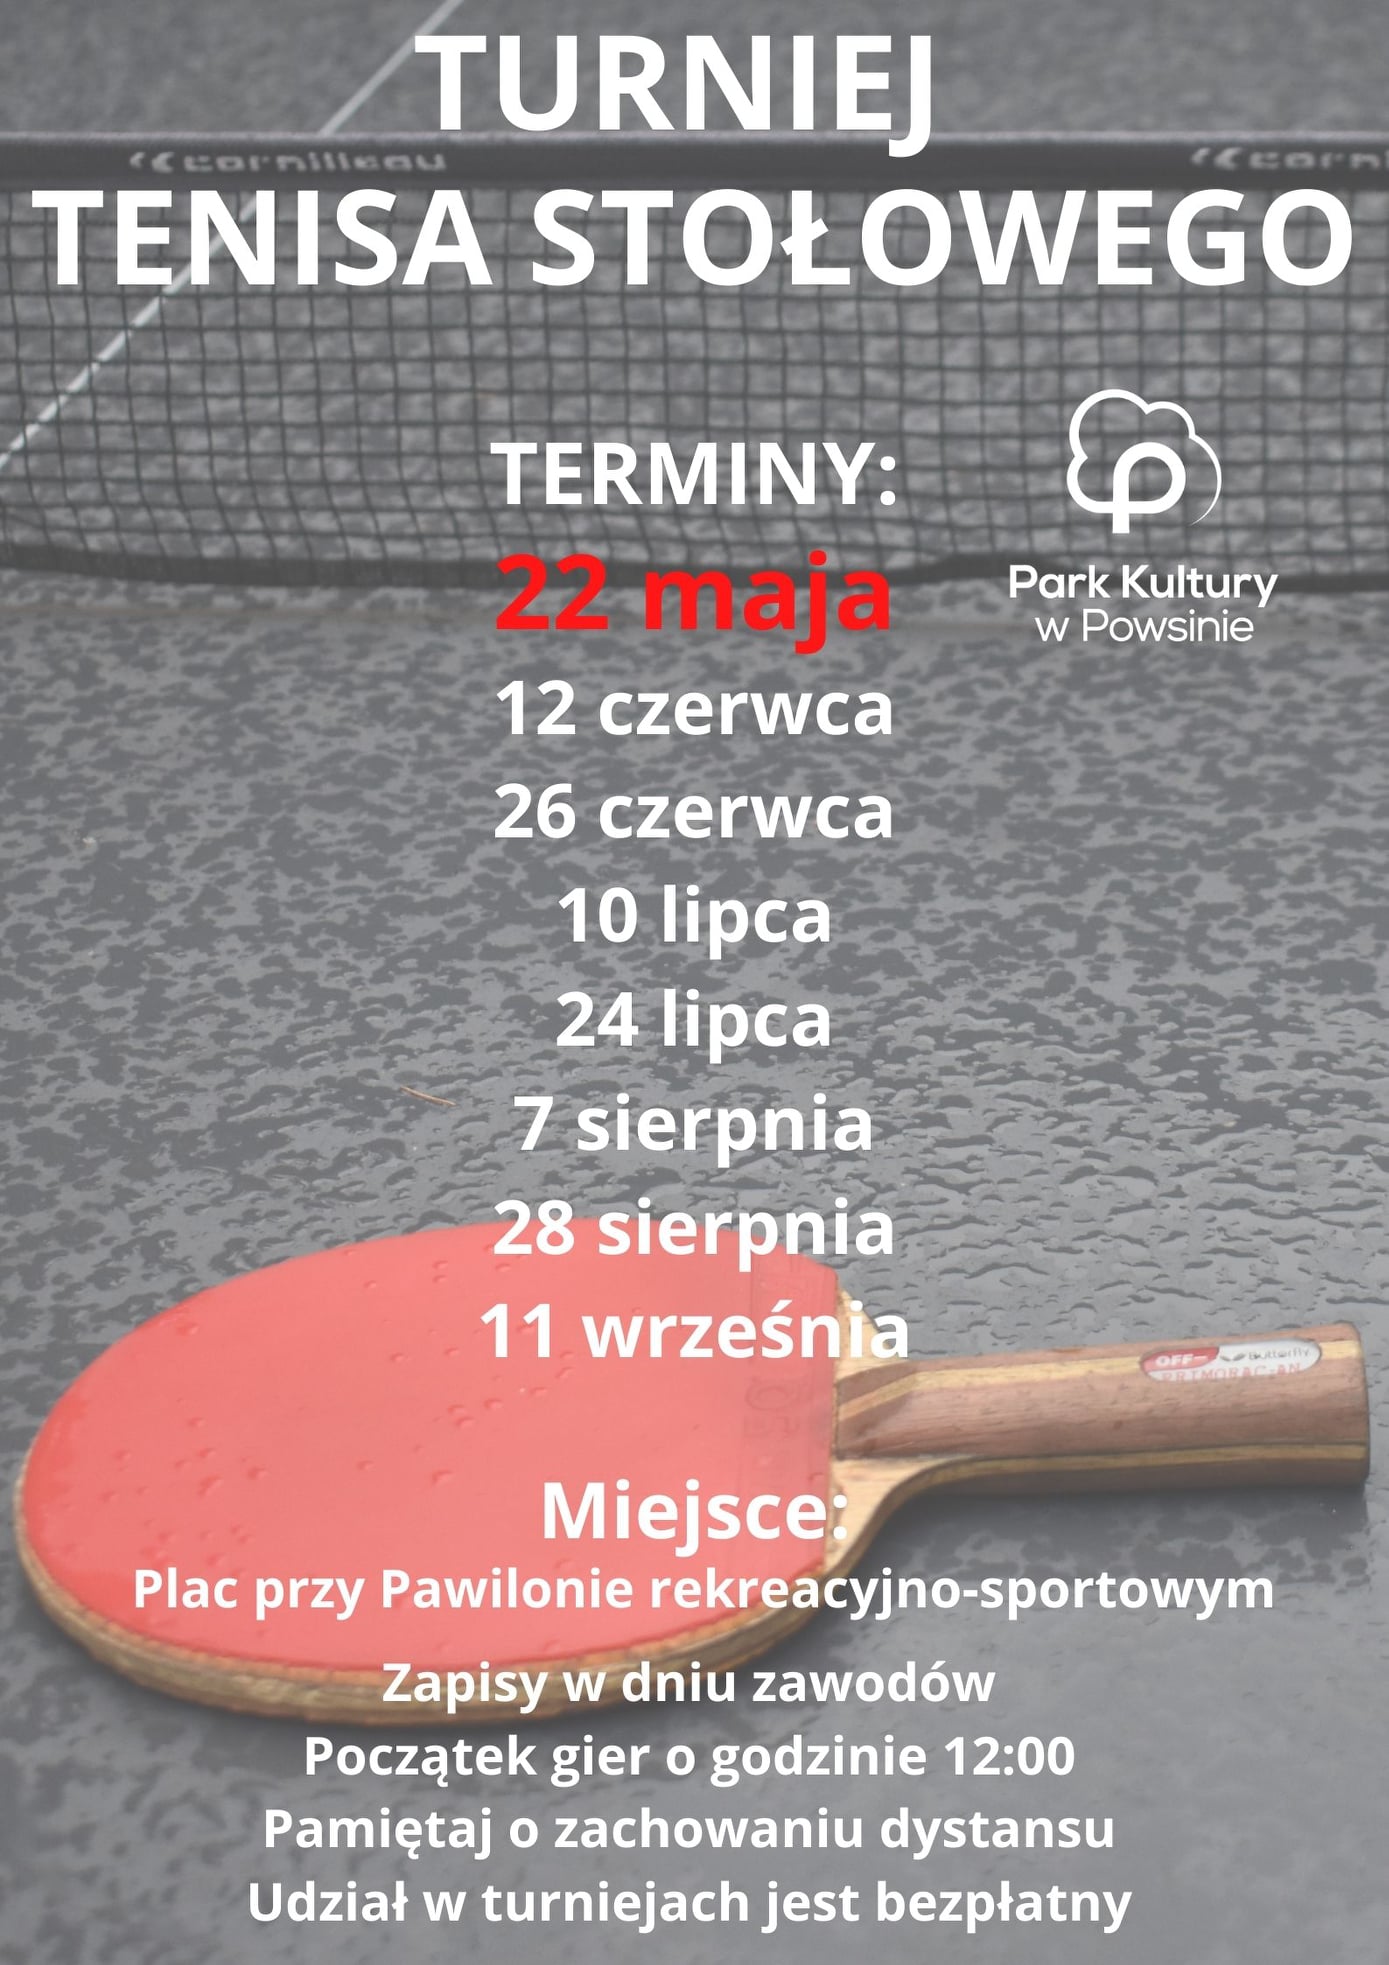 Plakat turnieju Cykl turniejów w tenisie stołowym w Parku Kultury w Powsinie 2021 - 7 termin